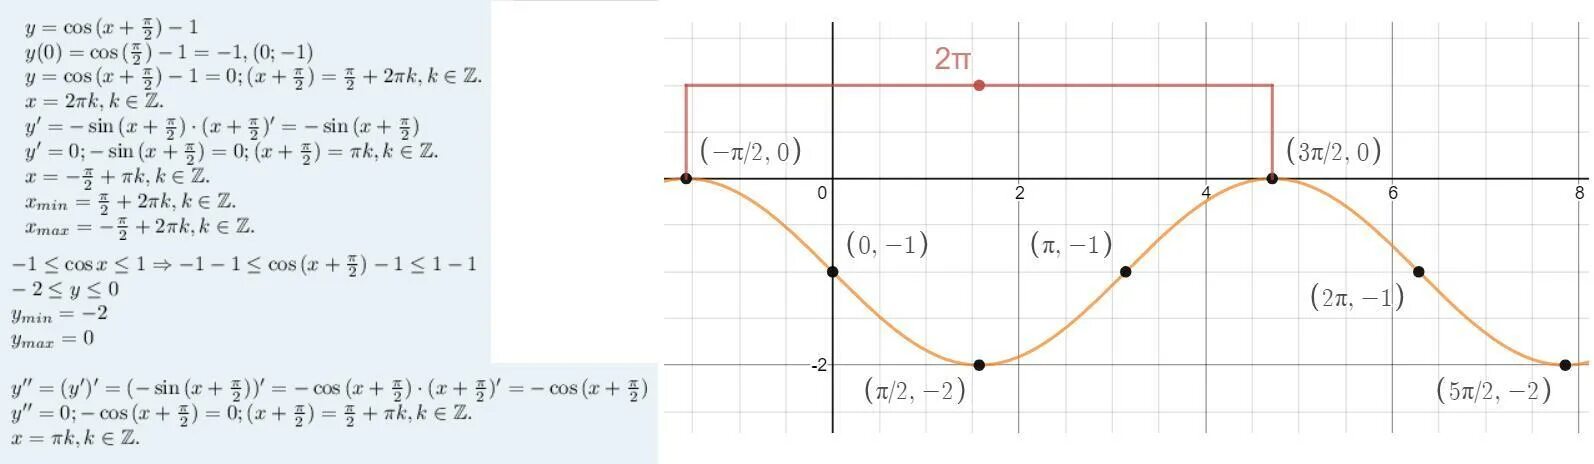 Π 2 2π. Cos(π2−x). У=COSC-1/2. Теперь построим график косинуса. Мы знаем что cos 0 = 1 cos π/3 = 1/2 cos π/2 = 1.